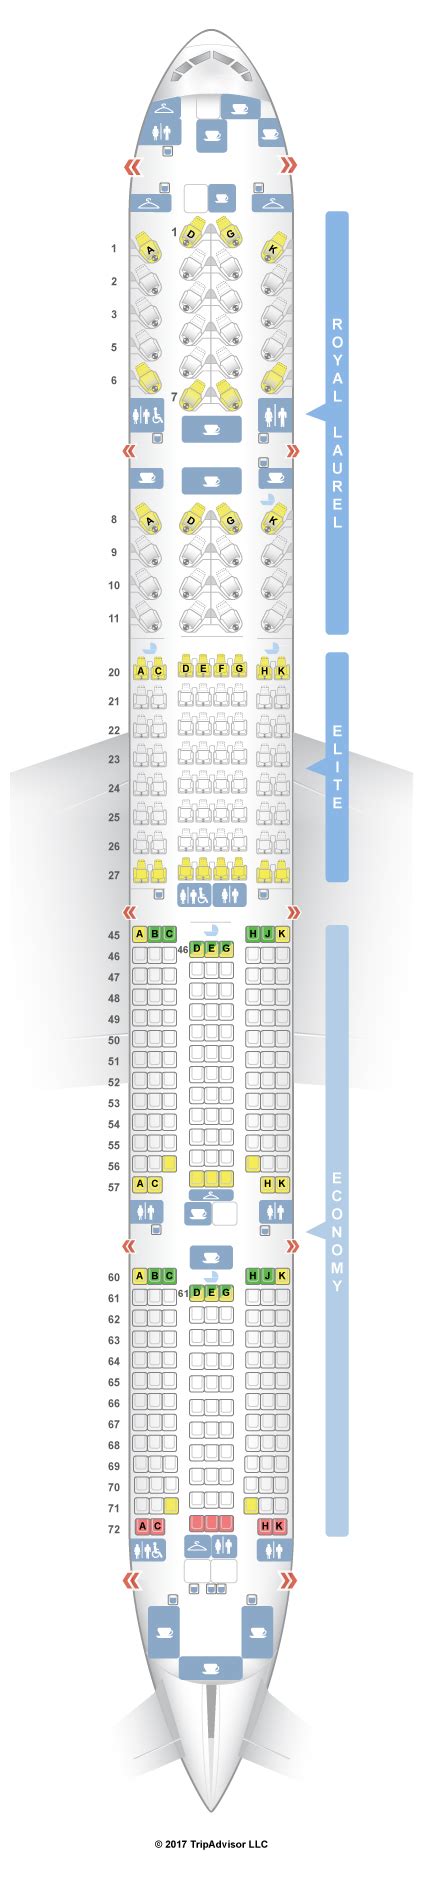 Seat Map Boeing 777 300er Qatar Airways